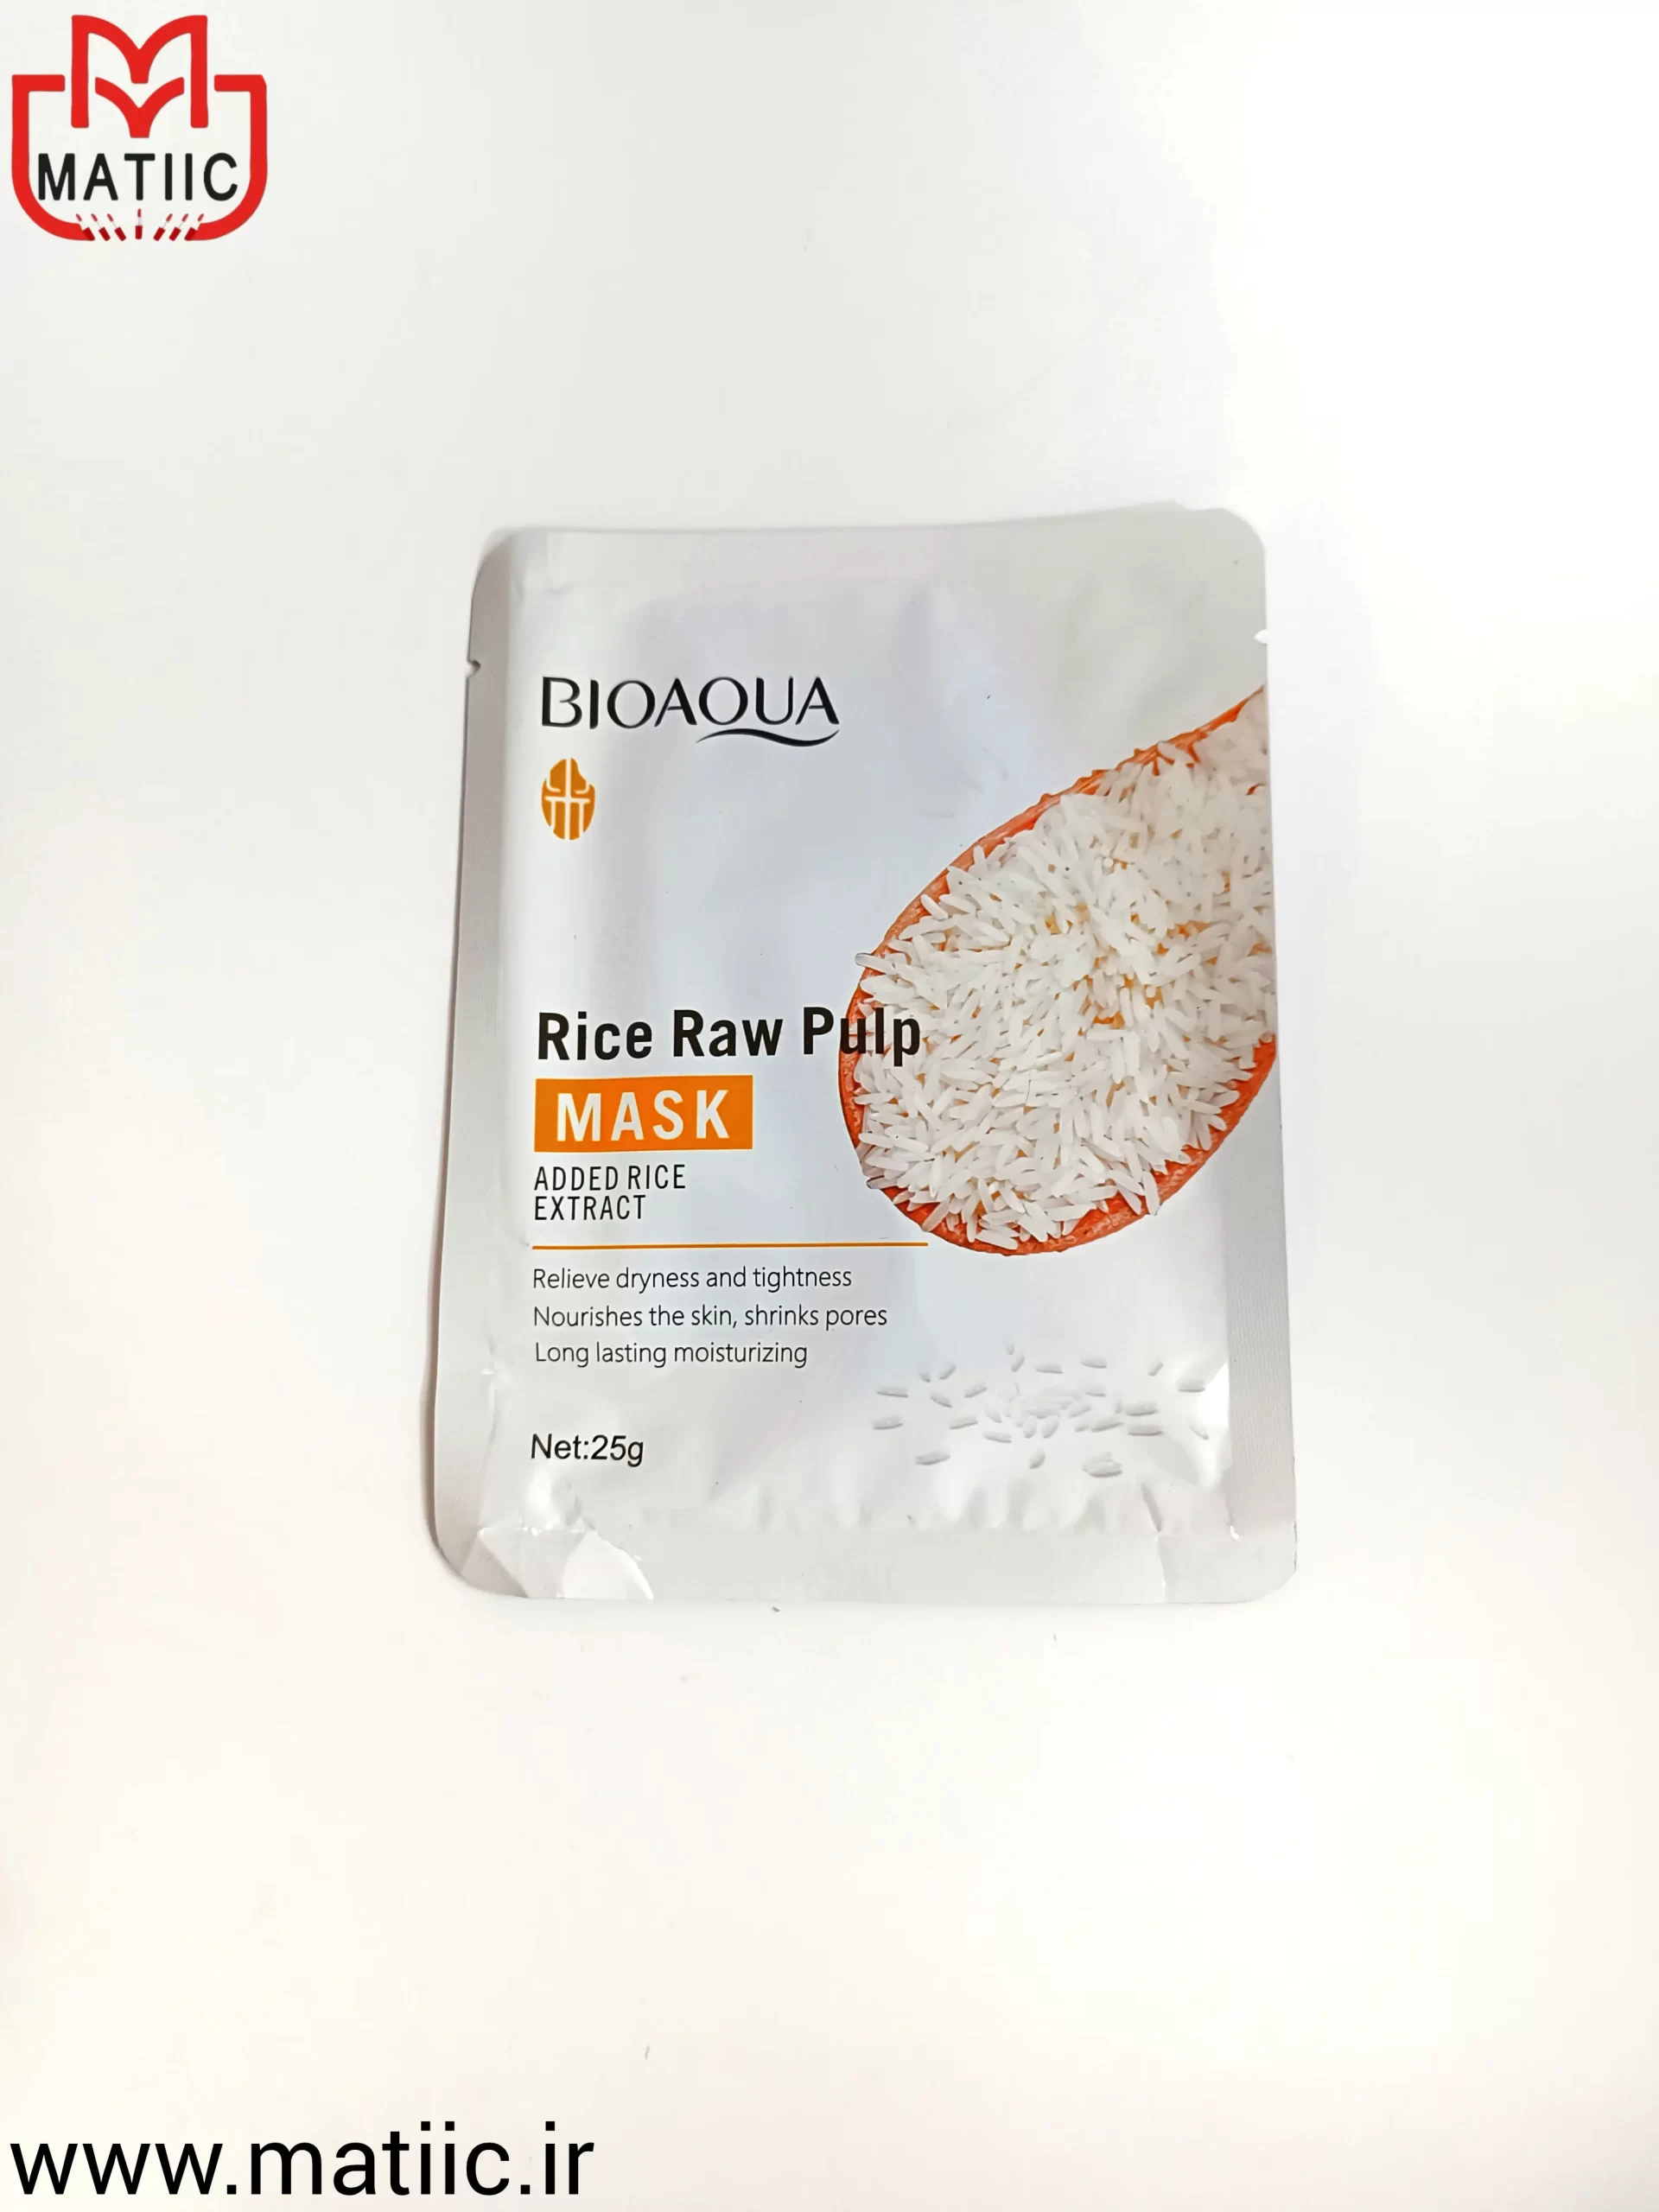 تصویری از ماسک ورقه ای برنج بیوآکوا